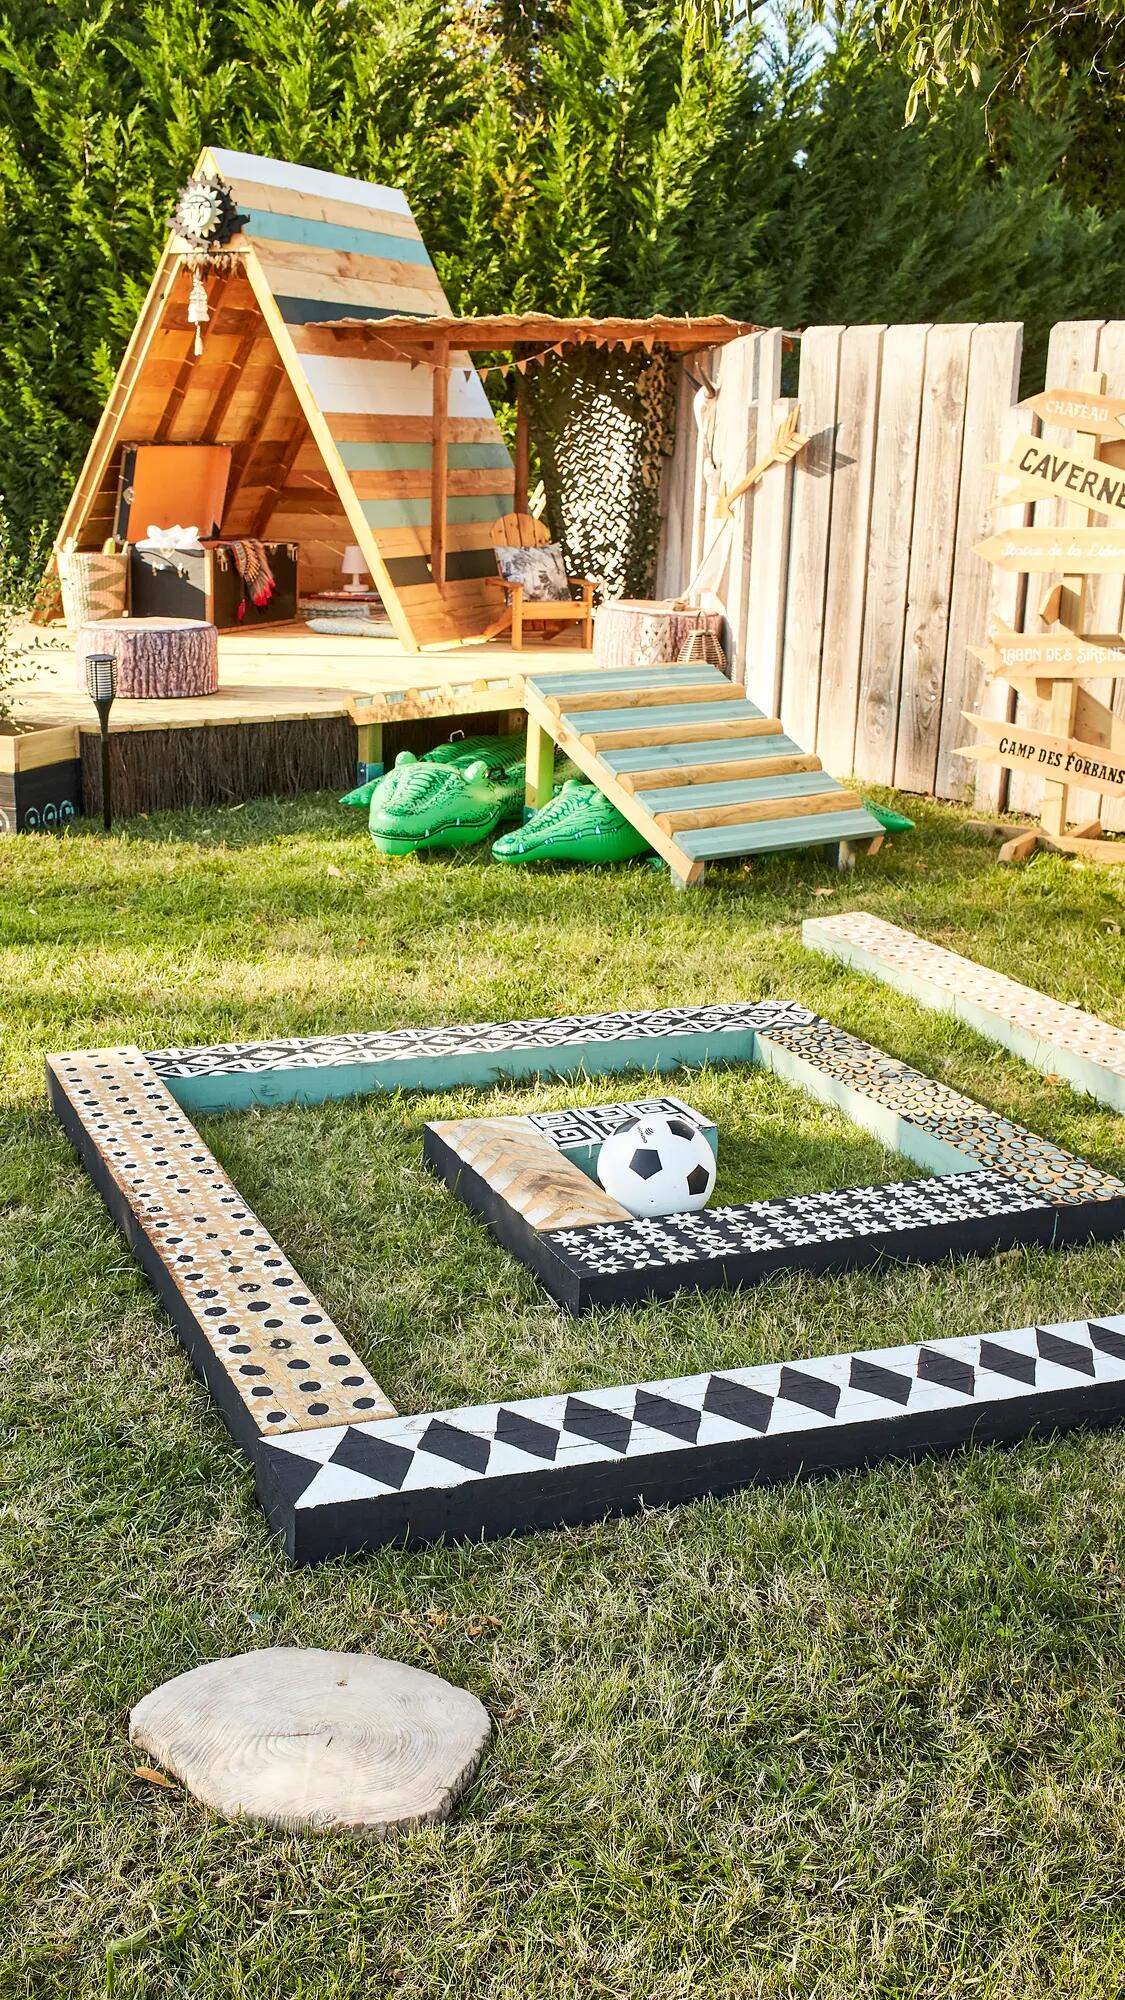 Comment installer une aire de jeux pour enfants dans son jardin ?